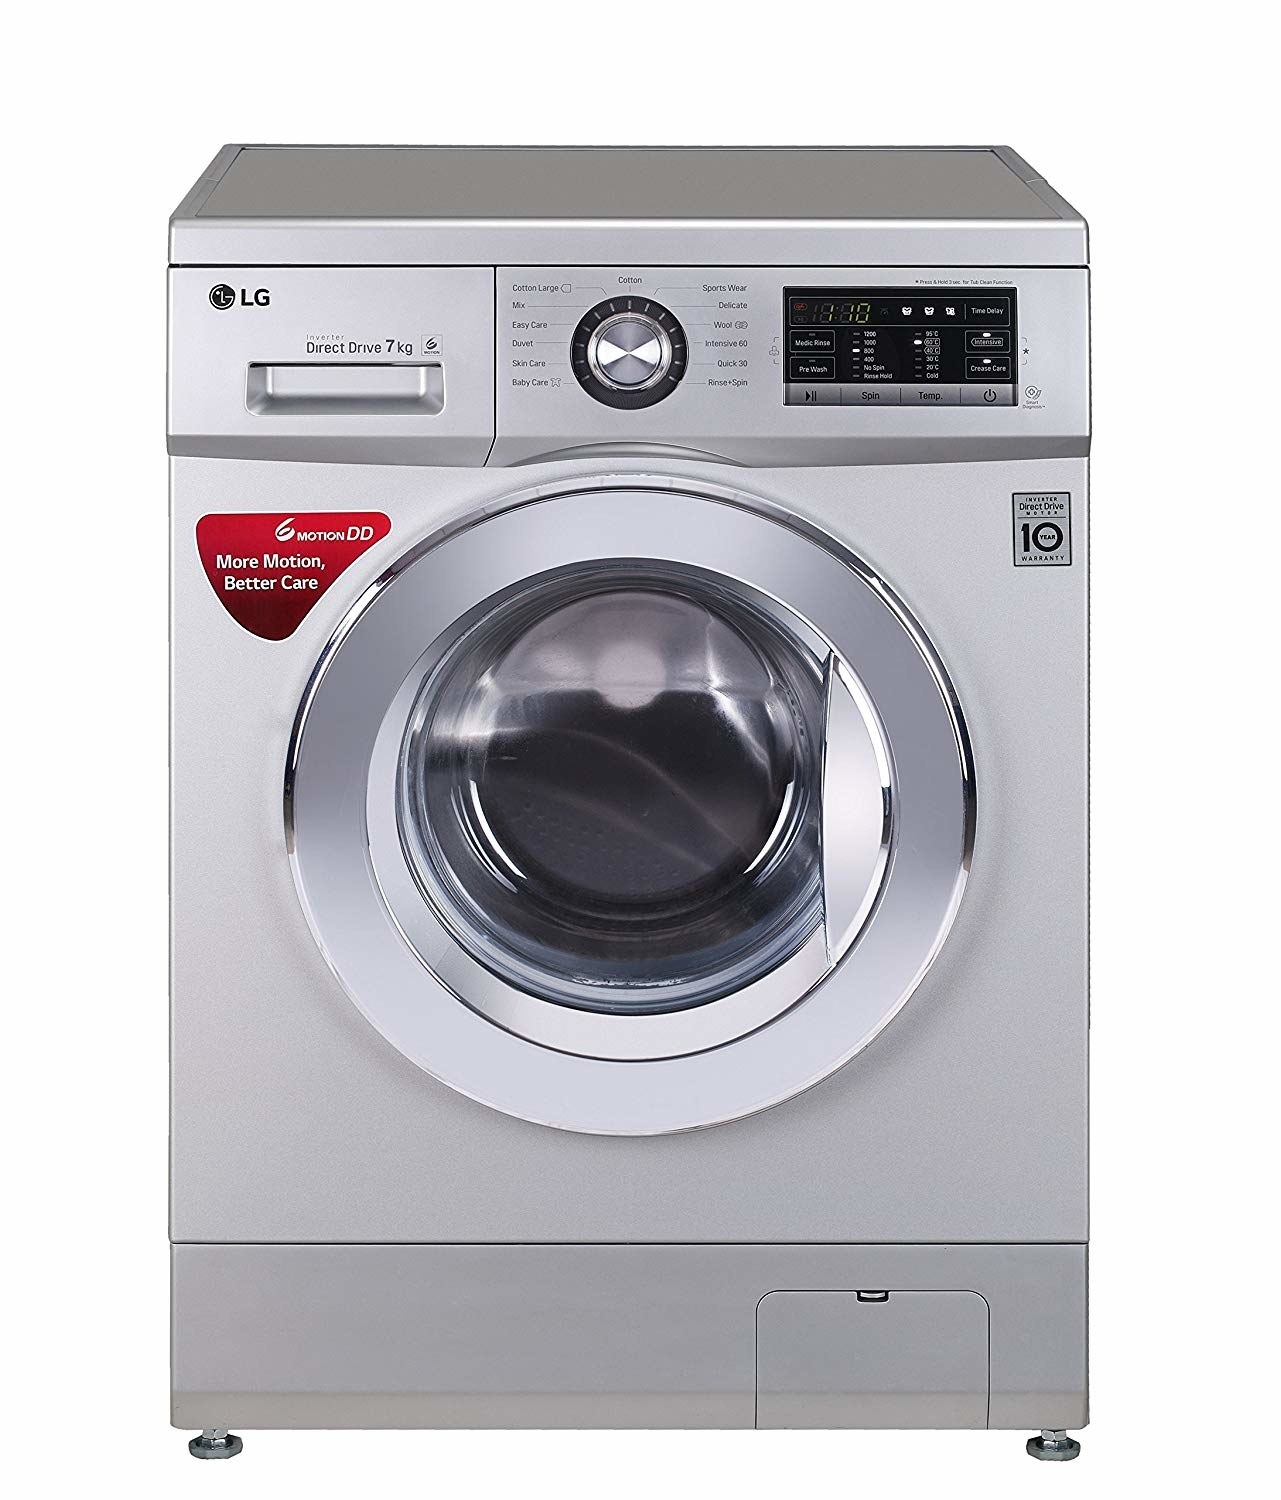 Какая лучше стиральная машина лджи или бош: Какая стиральная машина лучше LG или Bosch